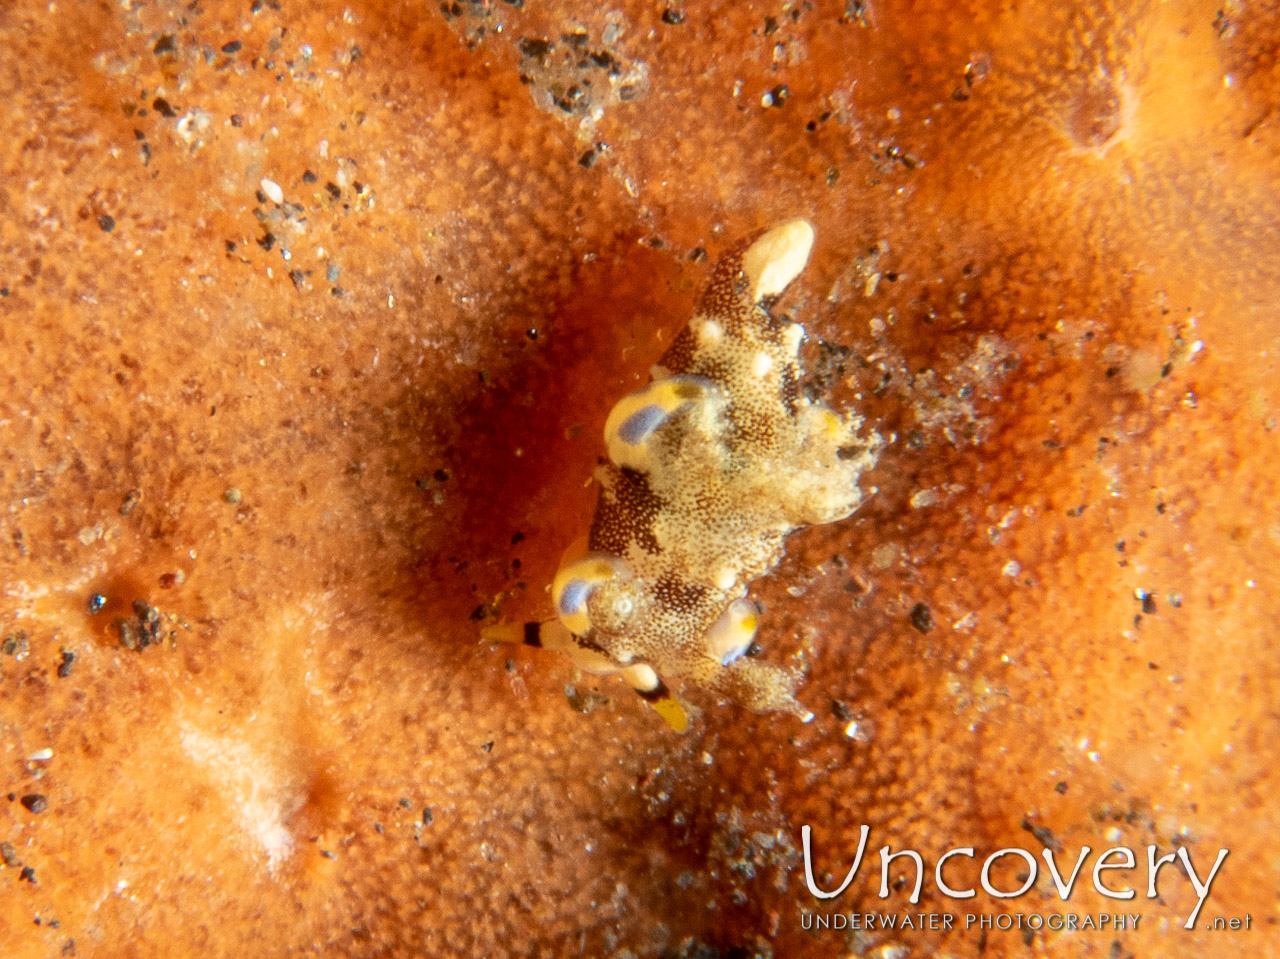 Nudibranch, photo taken in Indonesia, Bali, Tulamben, Wreck Slope